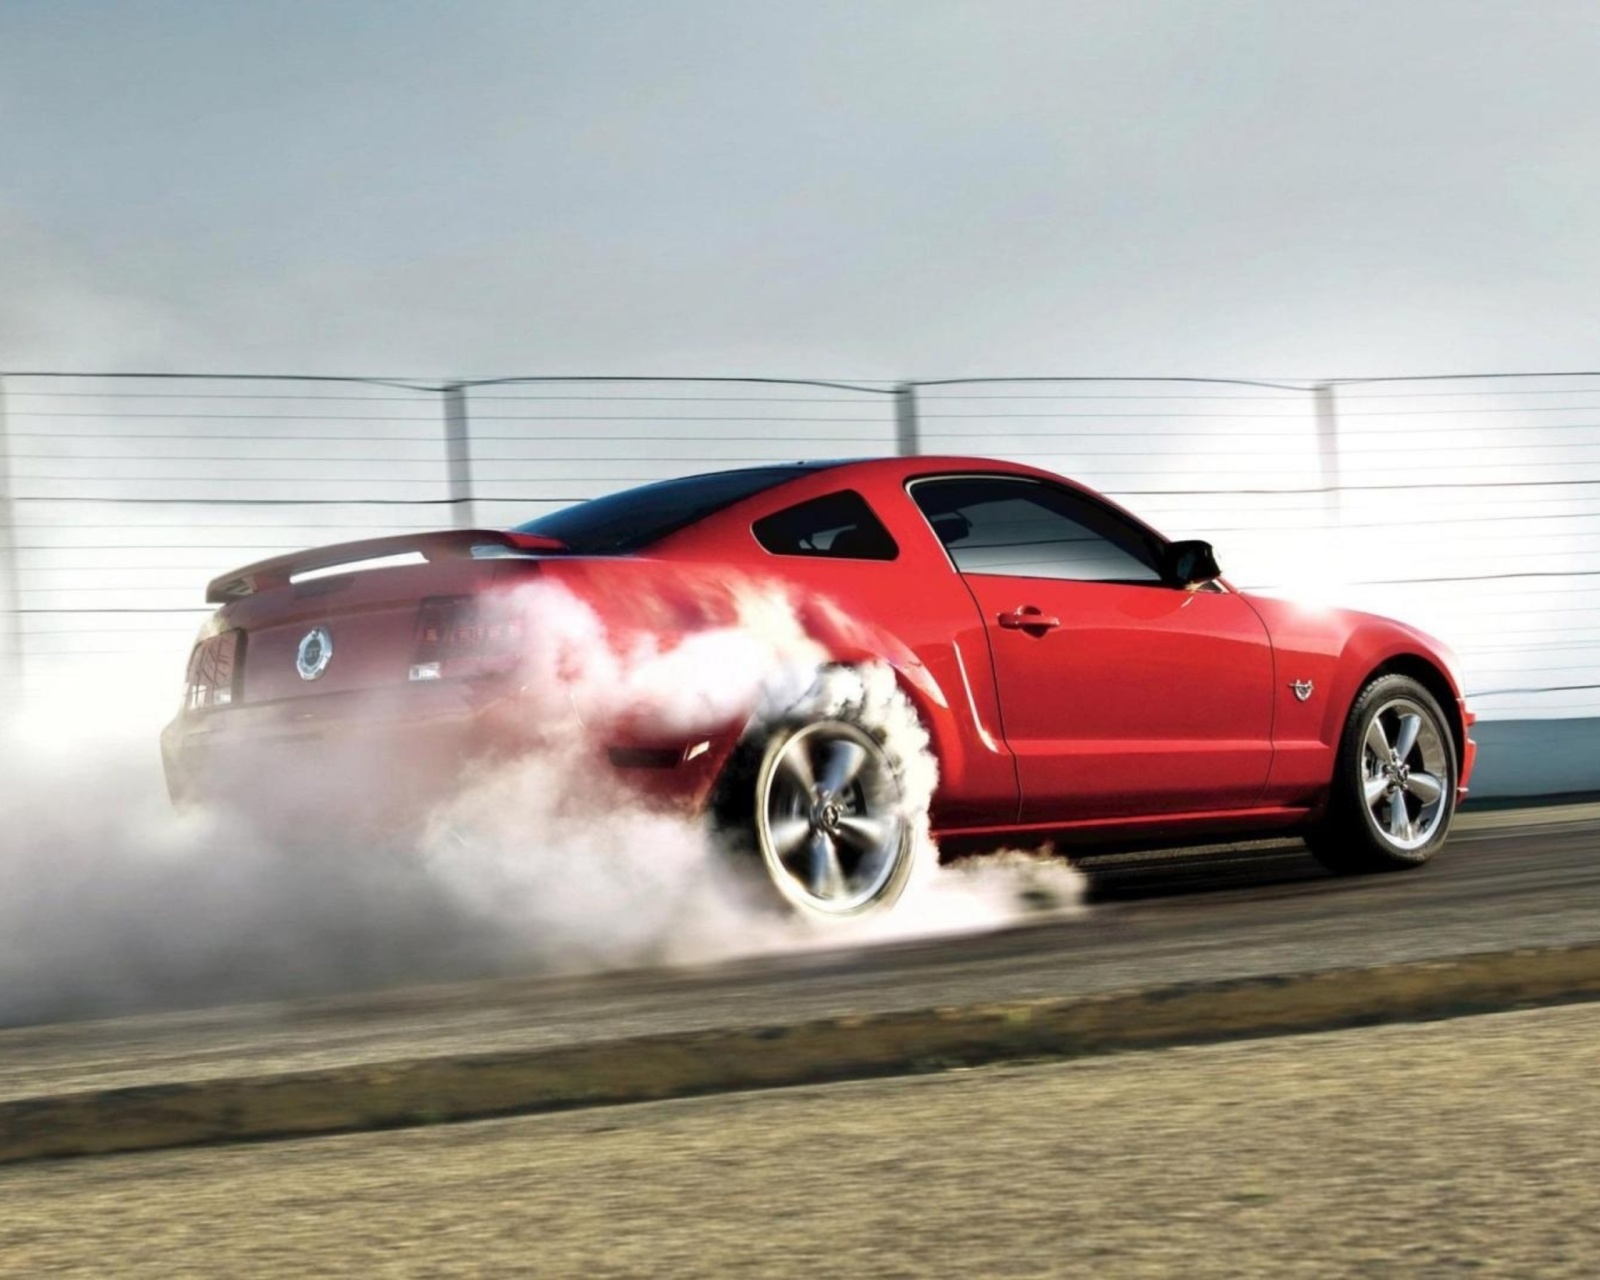 Red Mustang GT Best USA Sporcar wallpaper 1600x1280